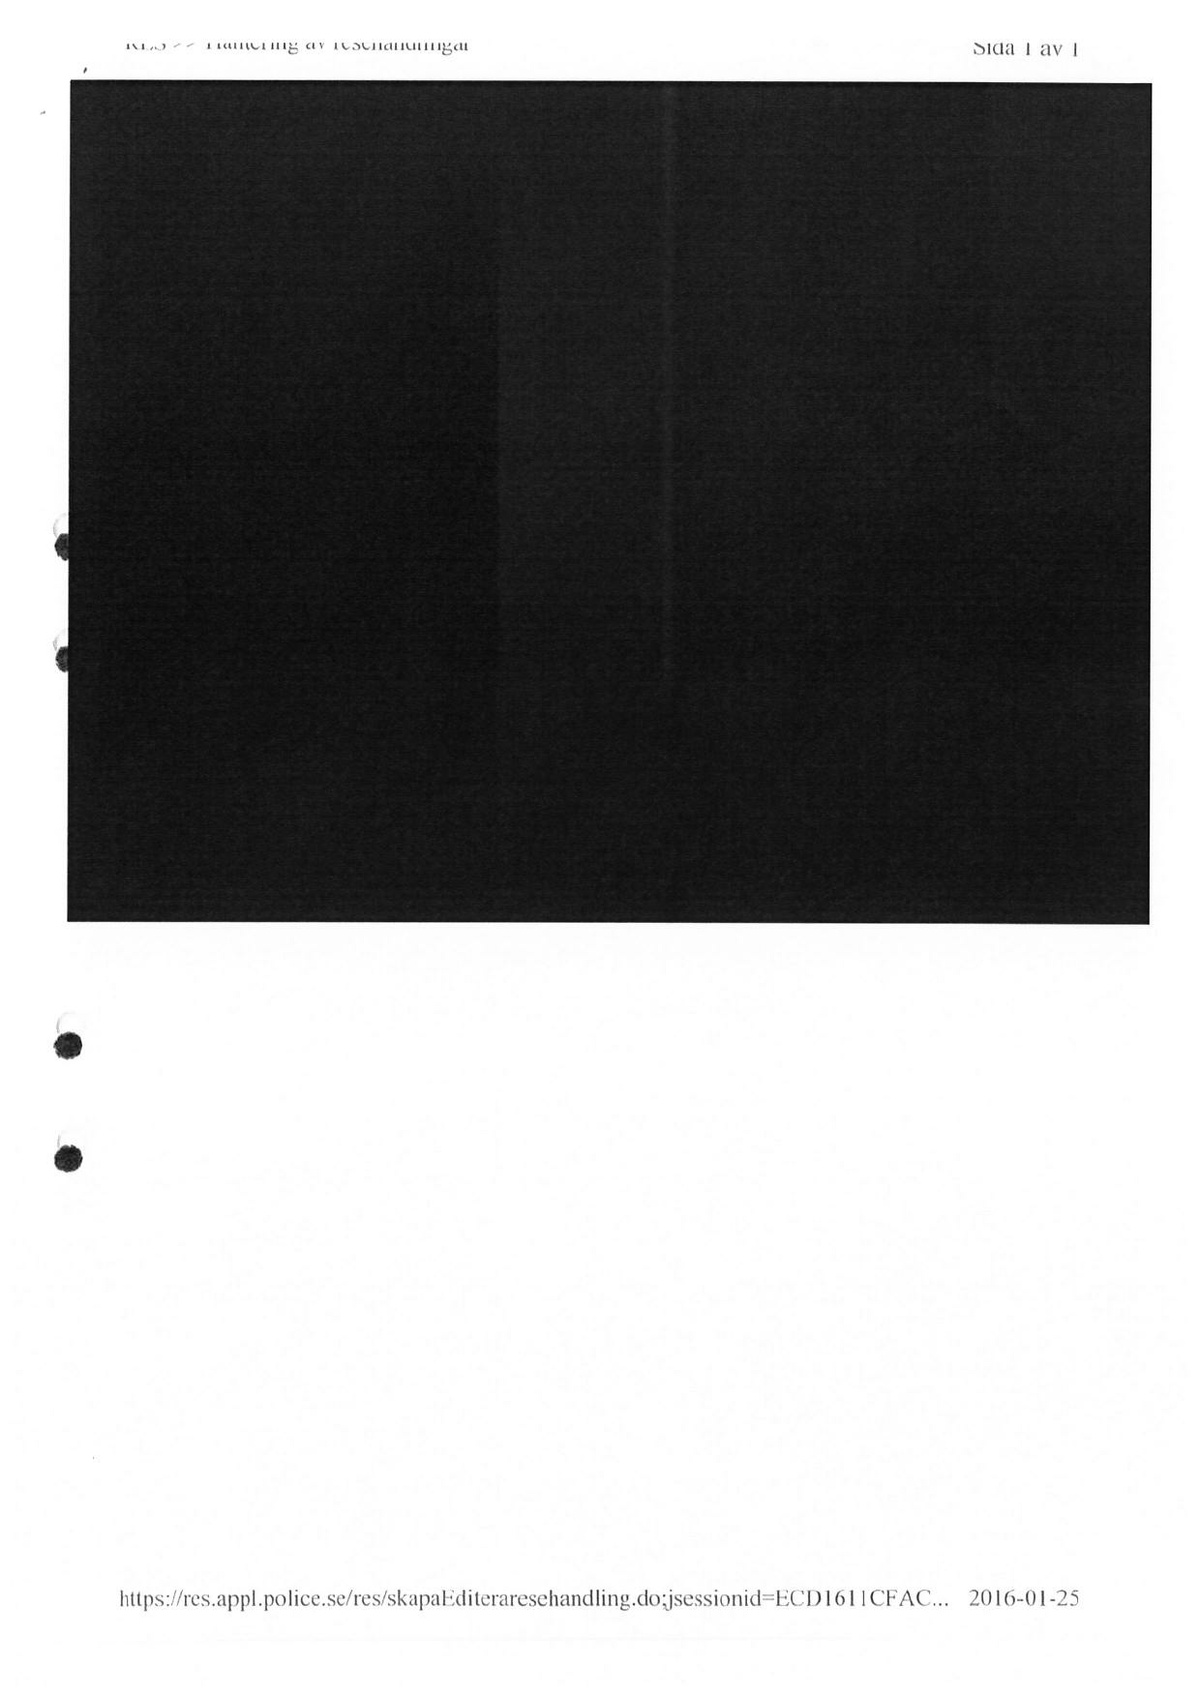 Pol-1992-03-02 D14460-05-A Södermötet.pdf